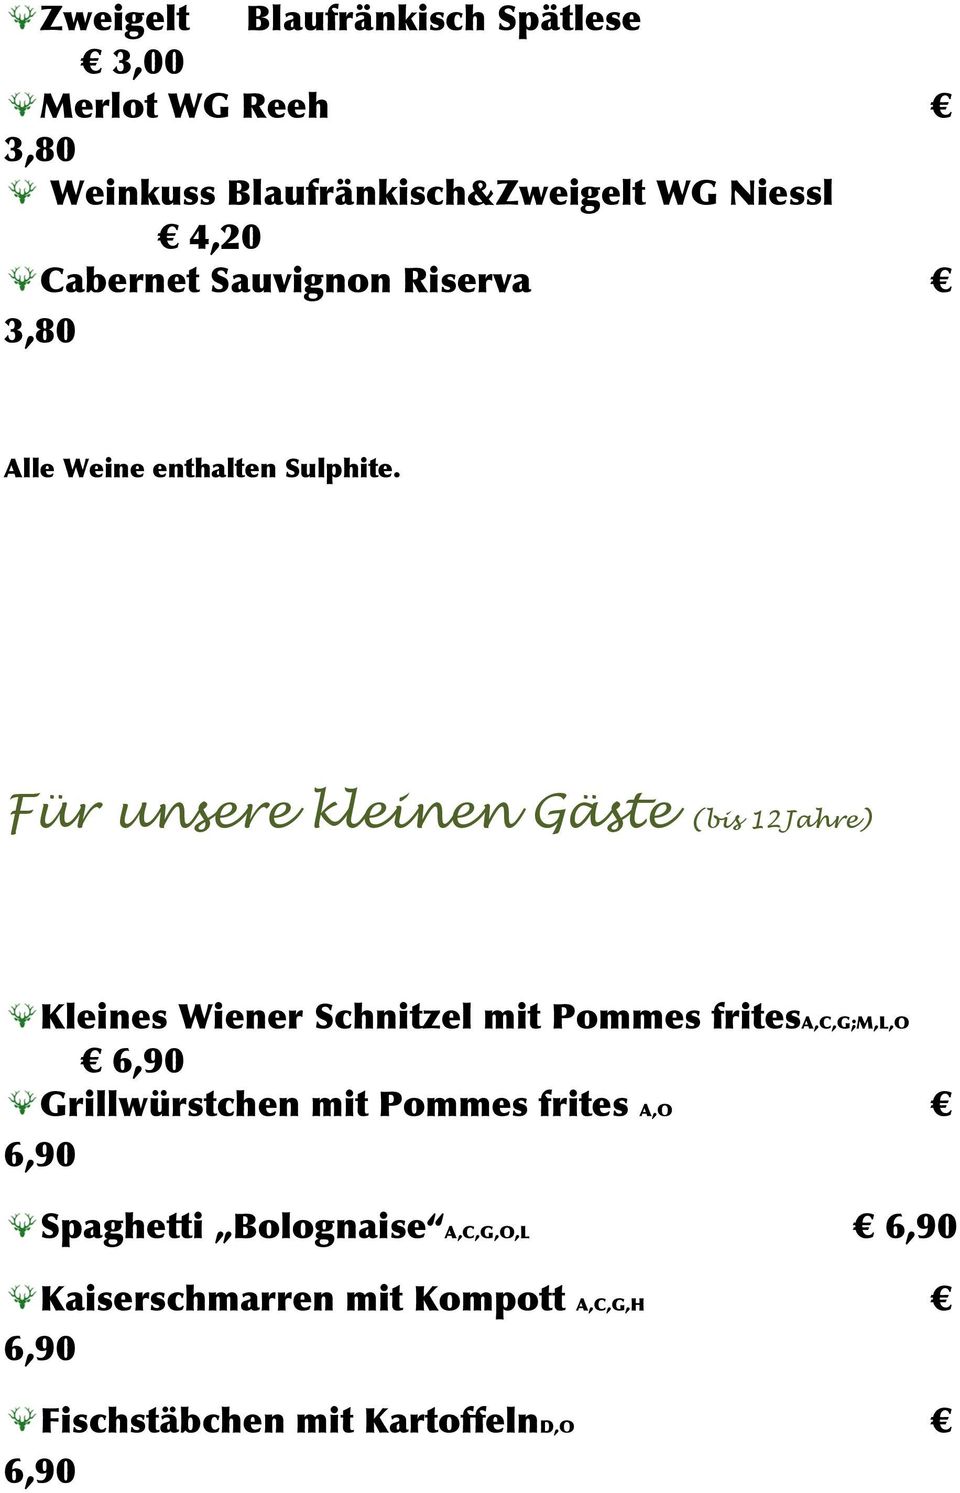 Für unsere kleinen Gäste (bis 12Jahre) Kleines Wiener Schnitzel mit Pommes fritesa,c,g;m,l,o 6,90